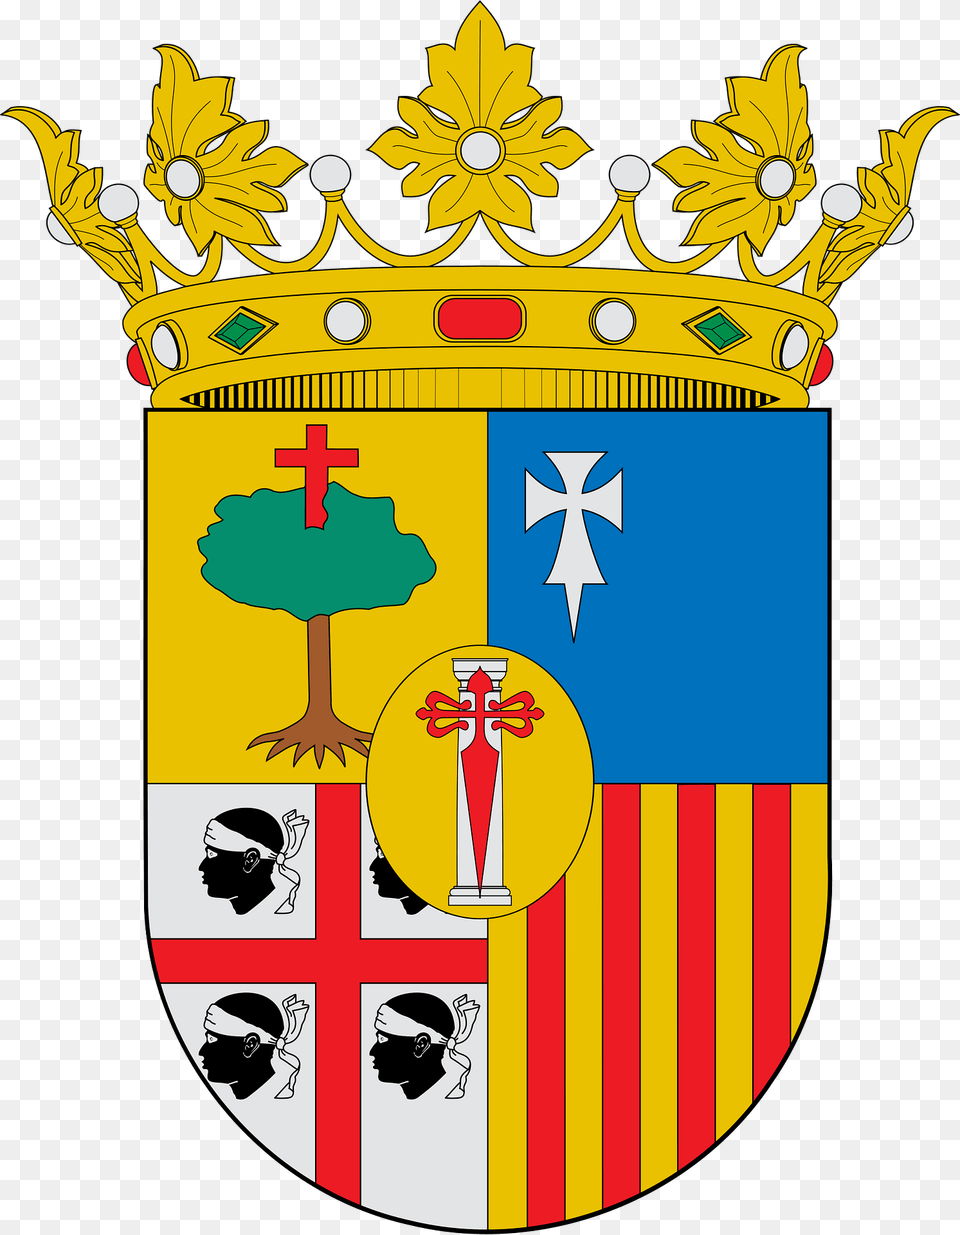 Escudo De La Provincia De Zaragoza Clipart, Person, Armor, Face, Head Png